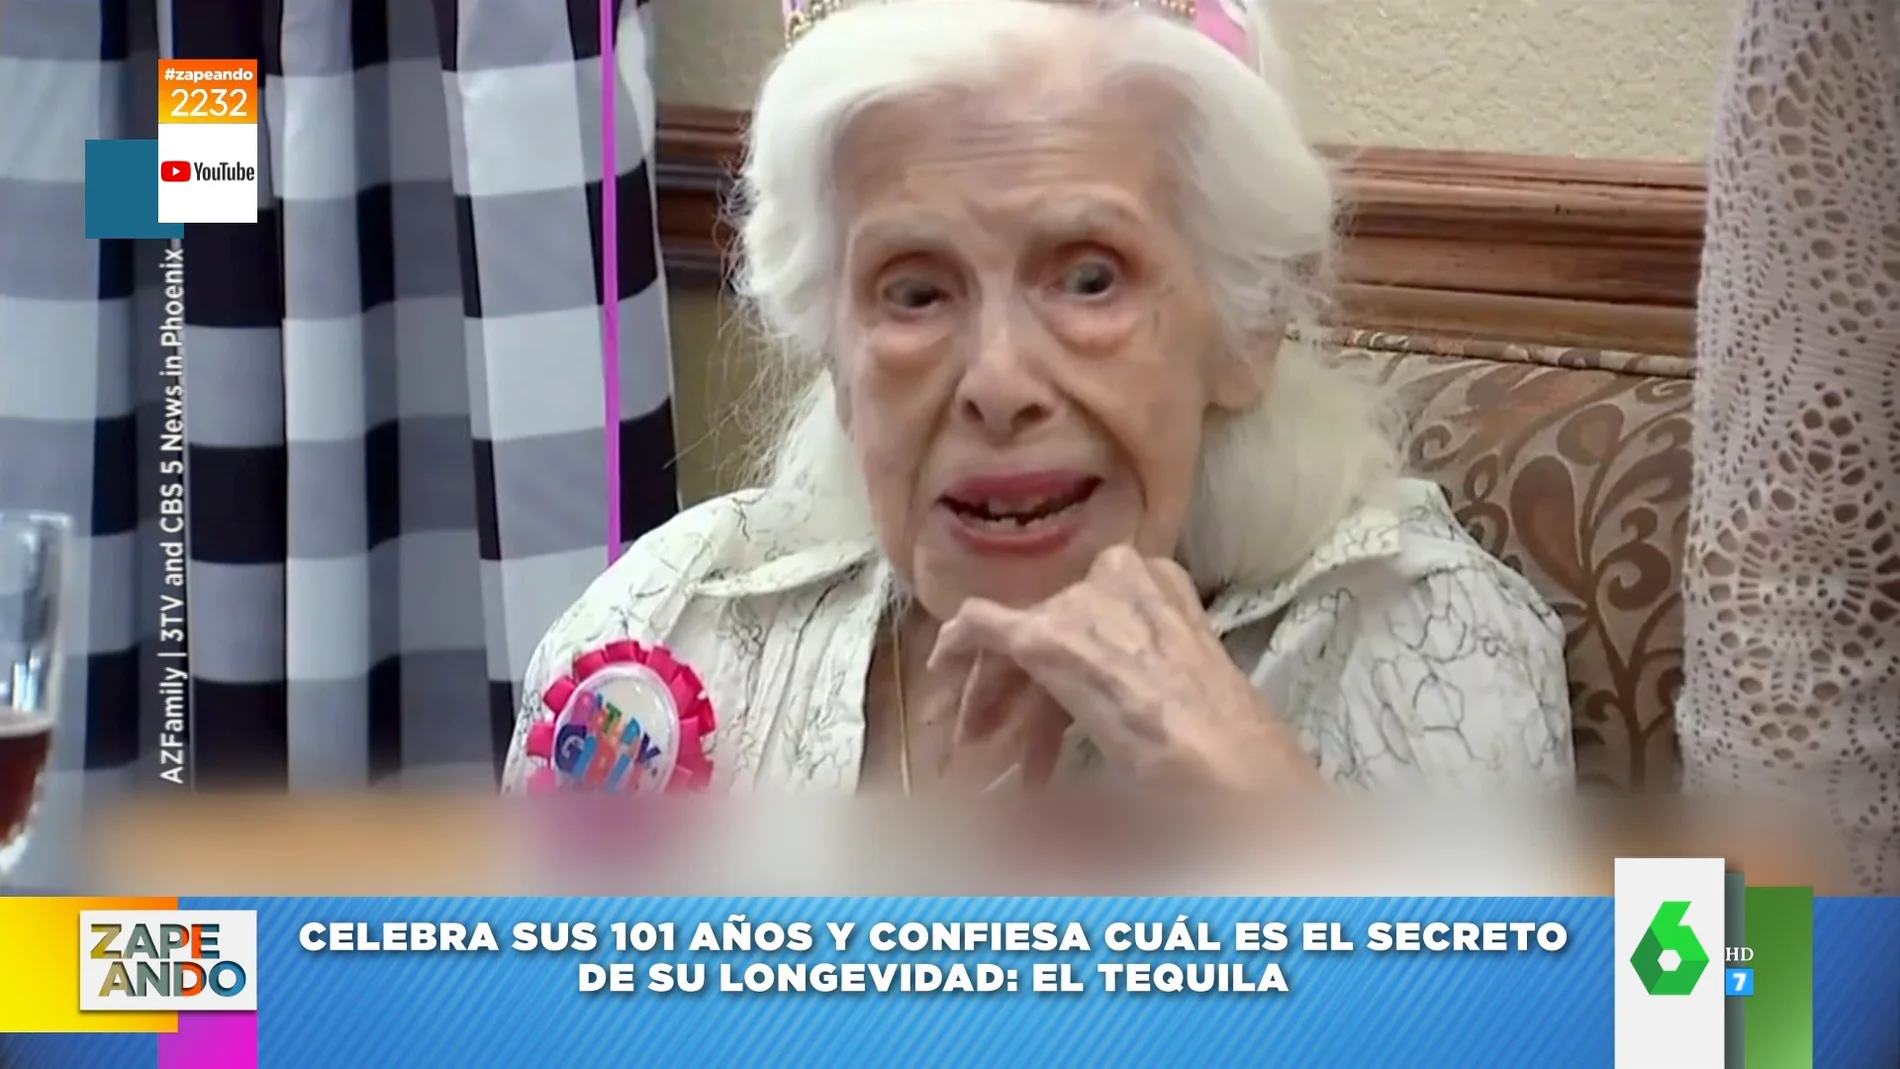 Vídeo viral de una mujer celebrando sus 101 años 